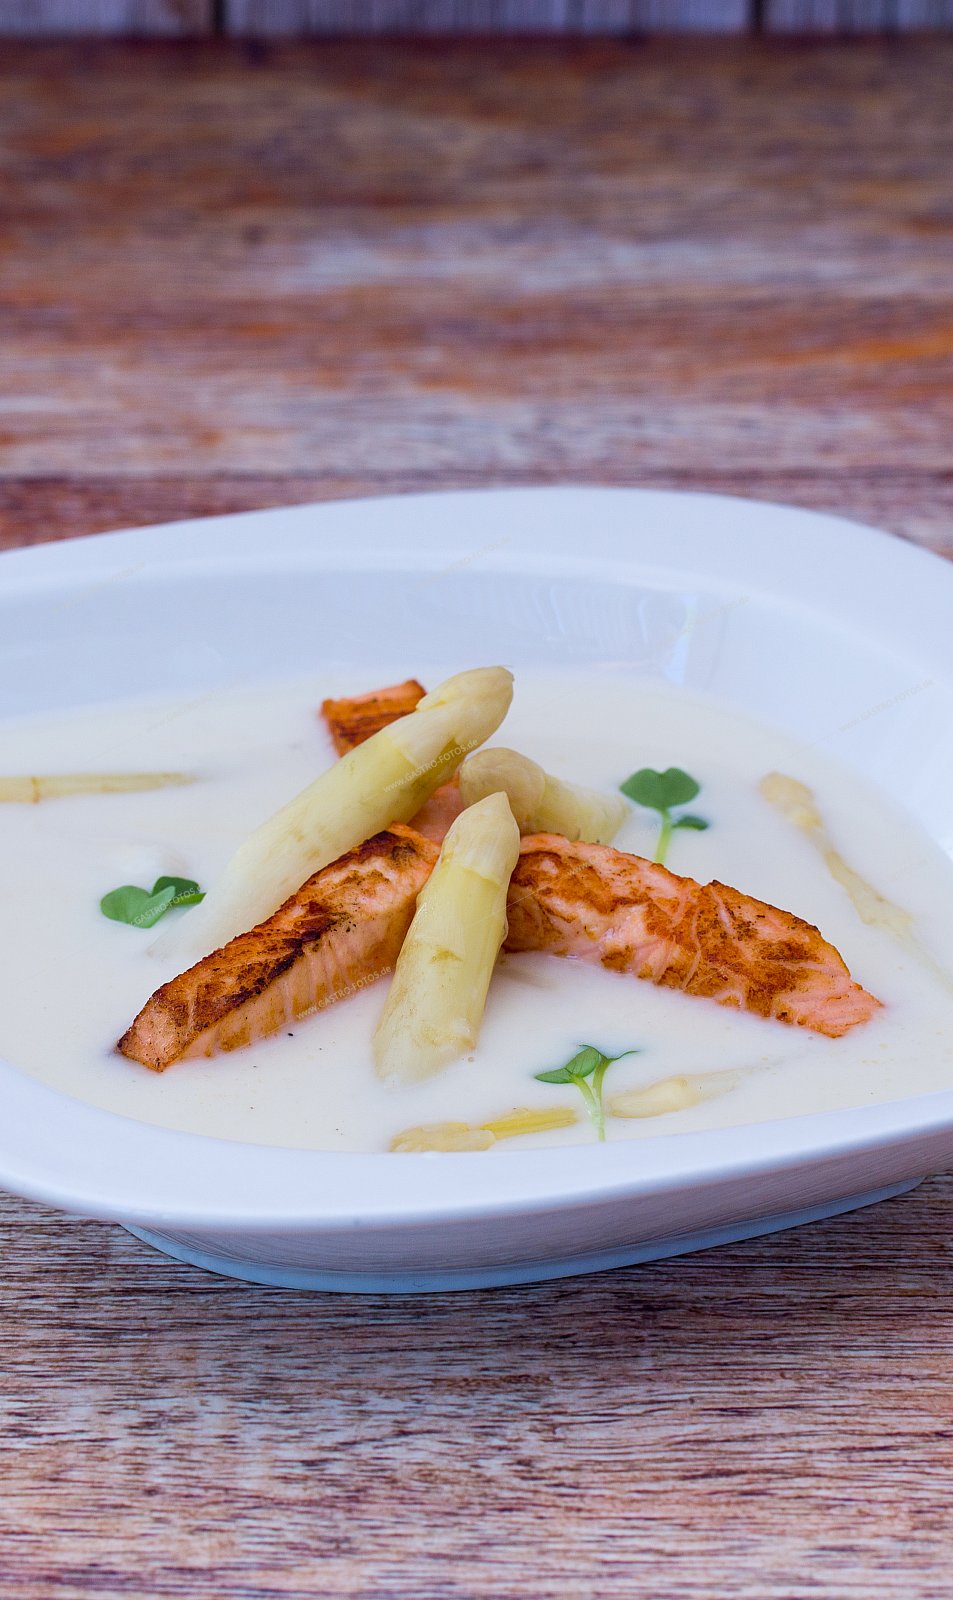 Spargelcremesuppe mit gebratenen Lachsstreifen - Suppen & Eintöpfe mit Fischeinlage